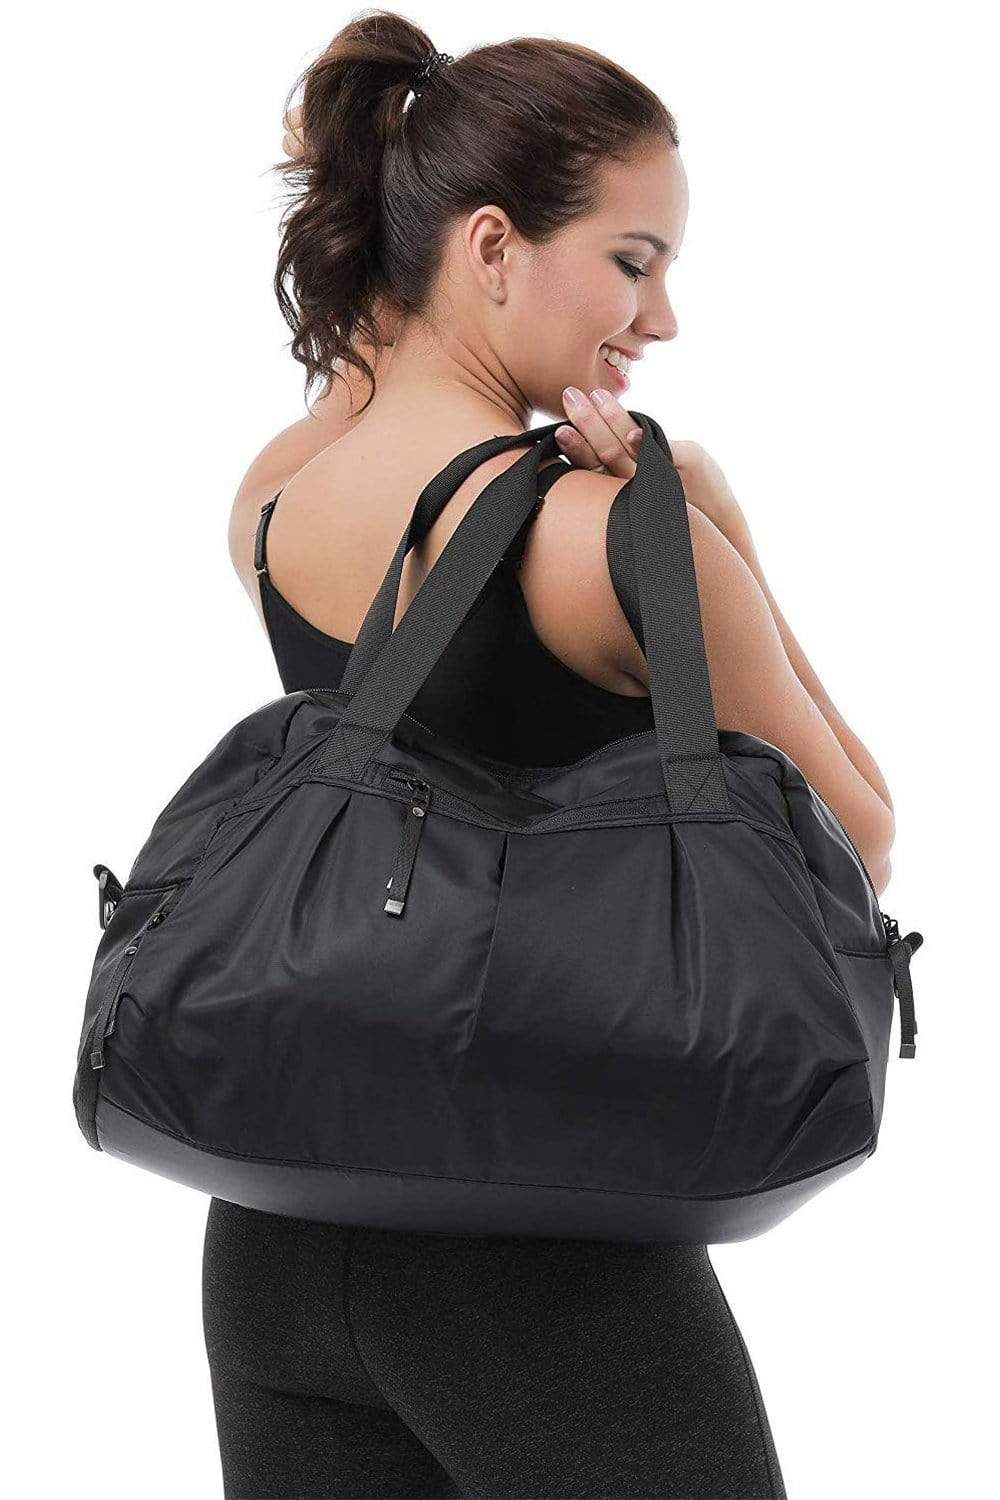 MIER Large Duffel Bag Men's Gym Bag with Shoe Compartment, 60L, Black